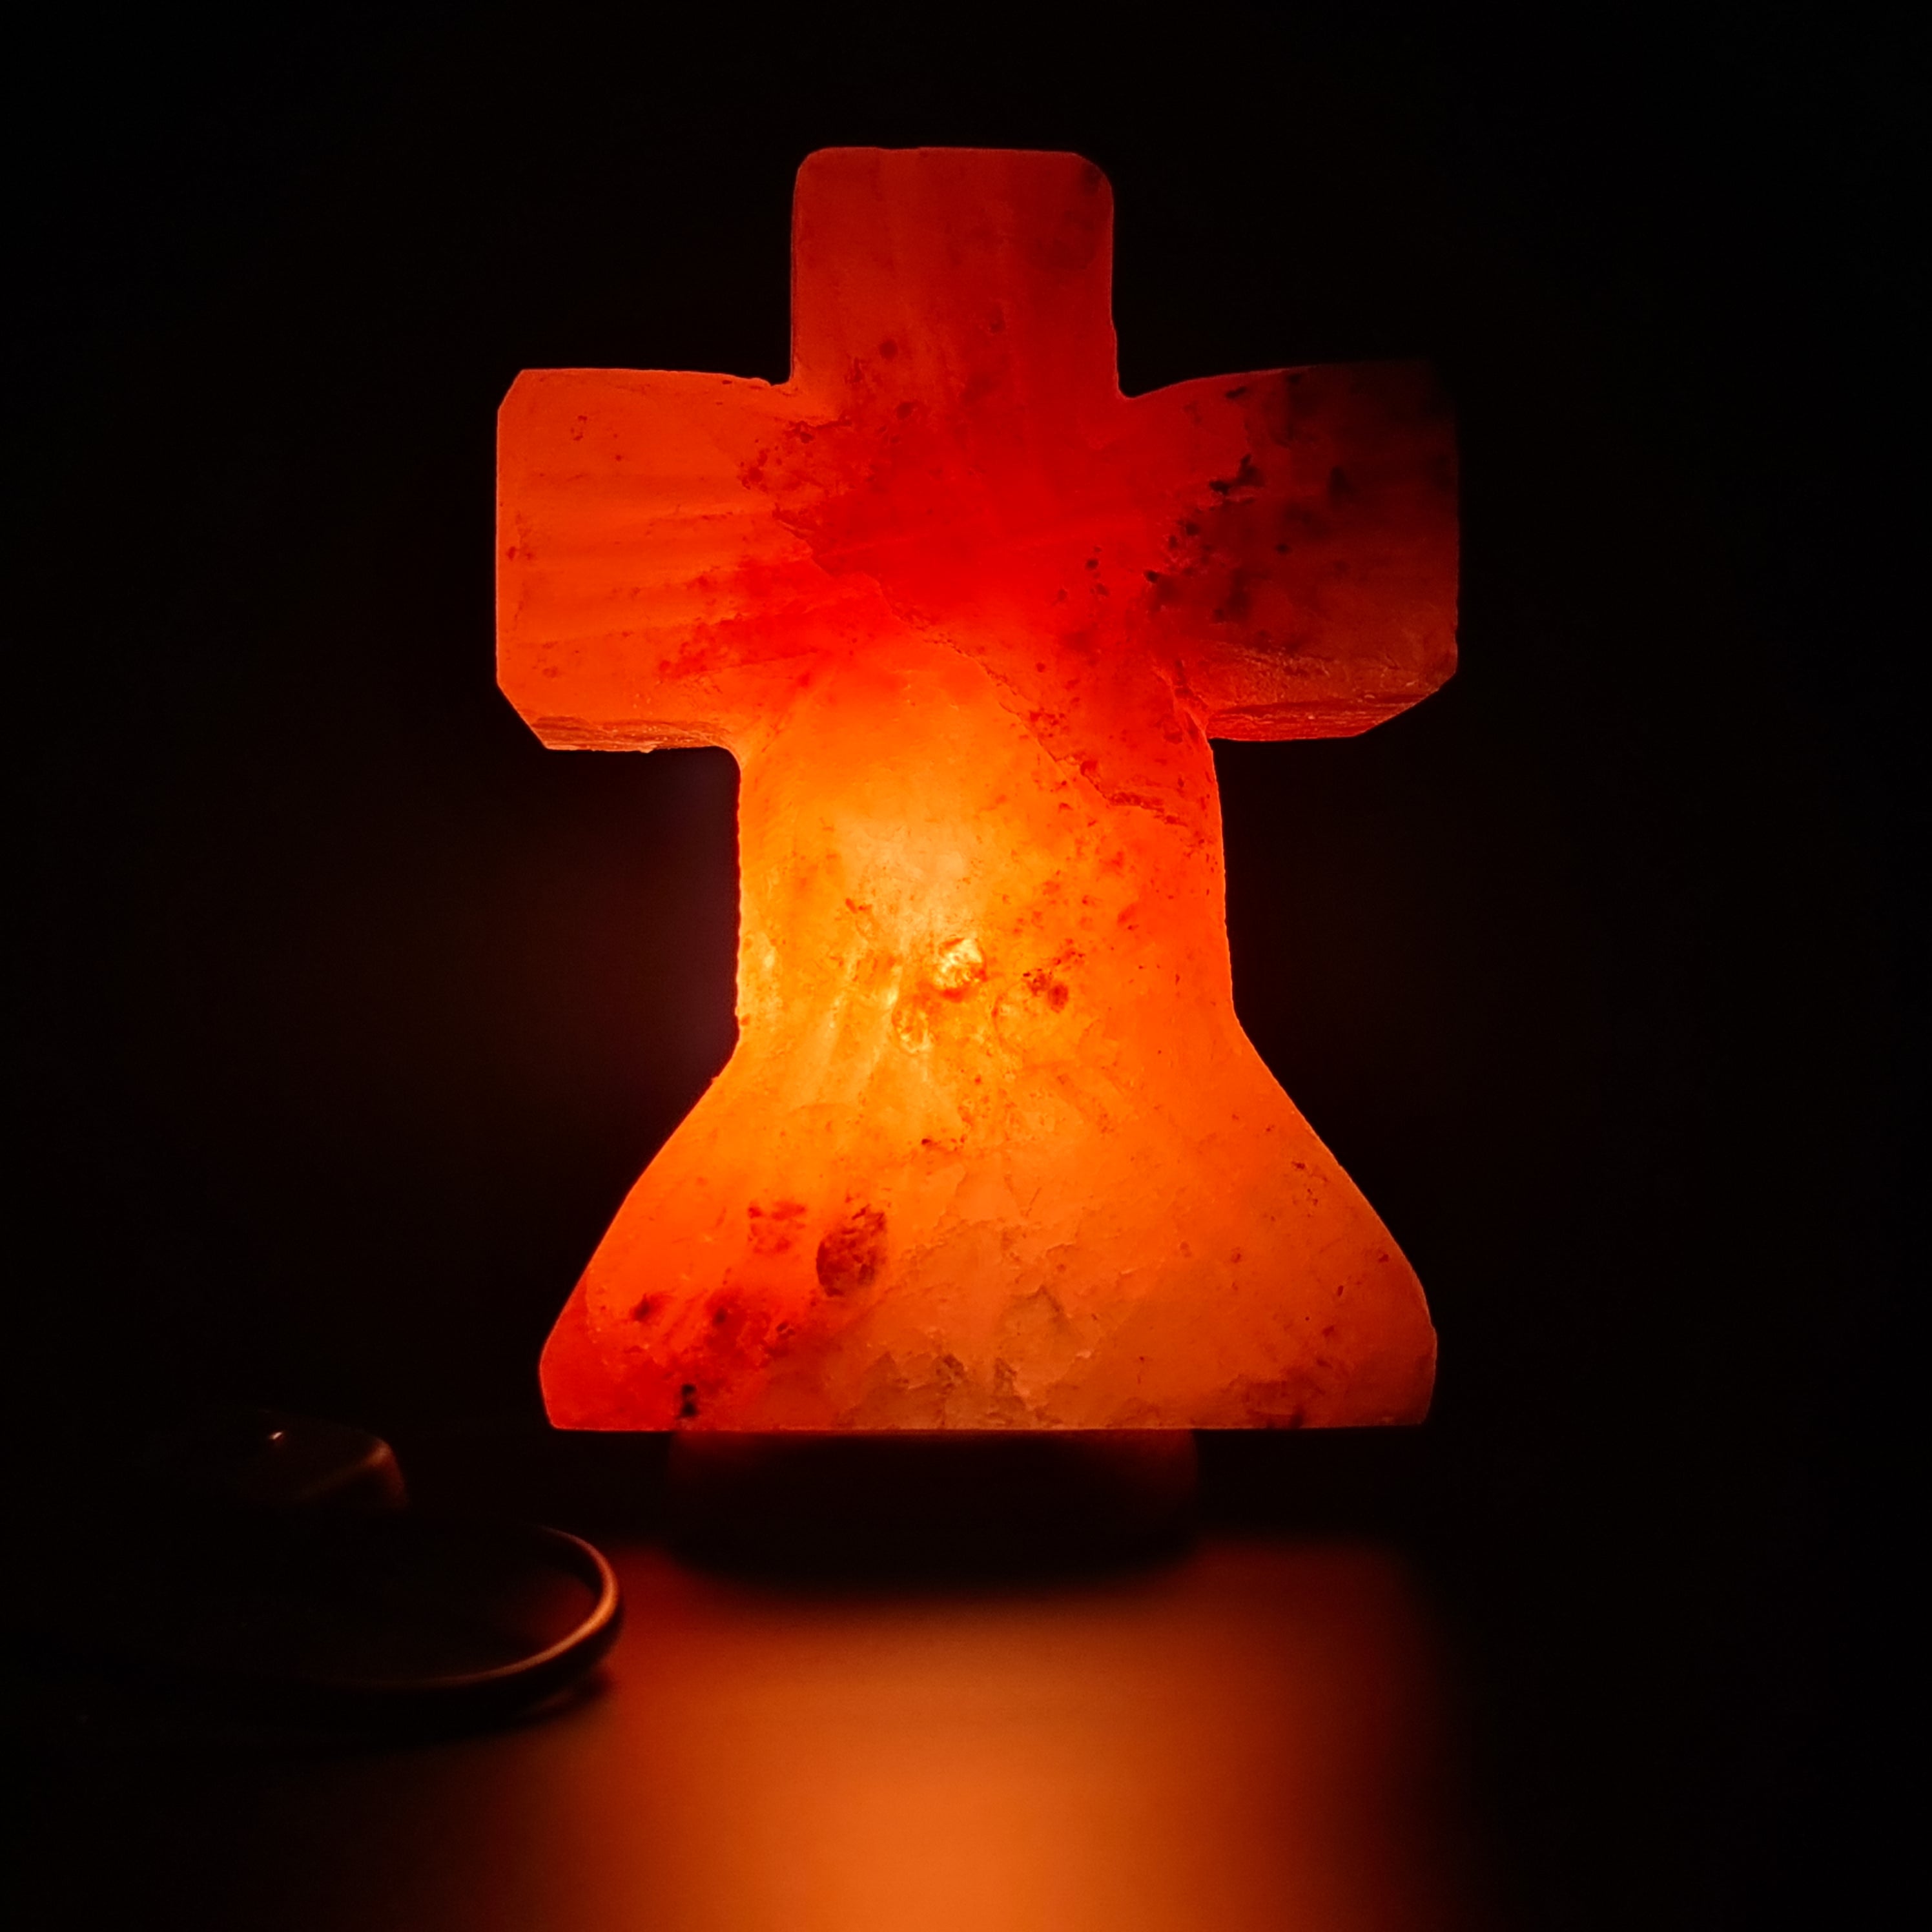 Himalayan Christ Cross Salt Lamp